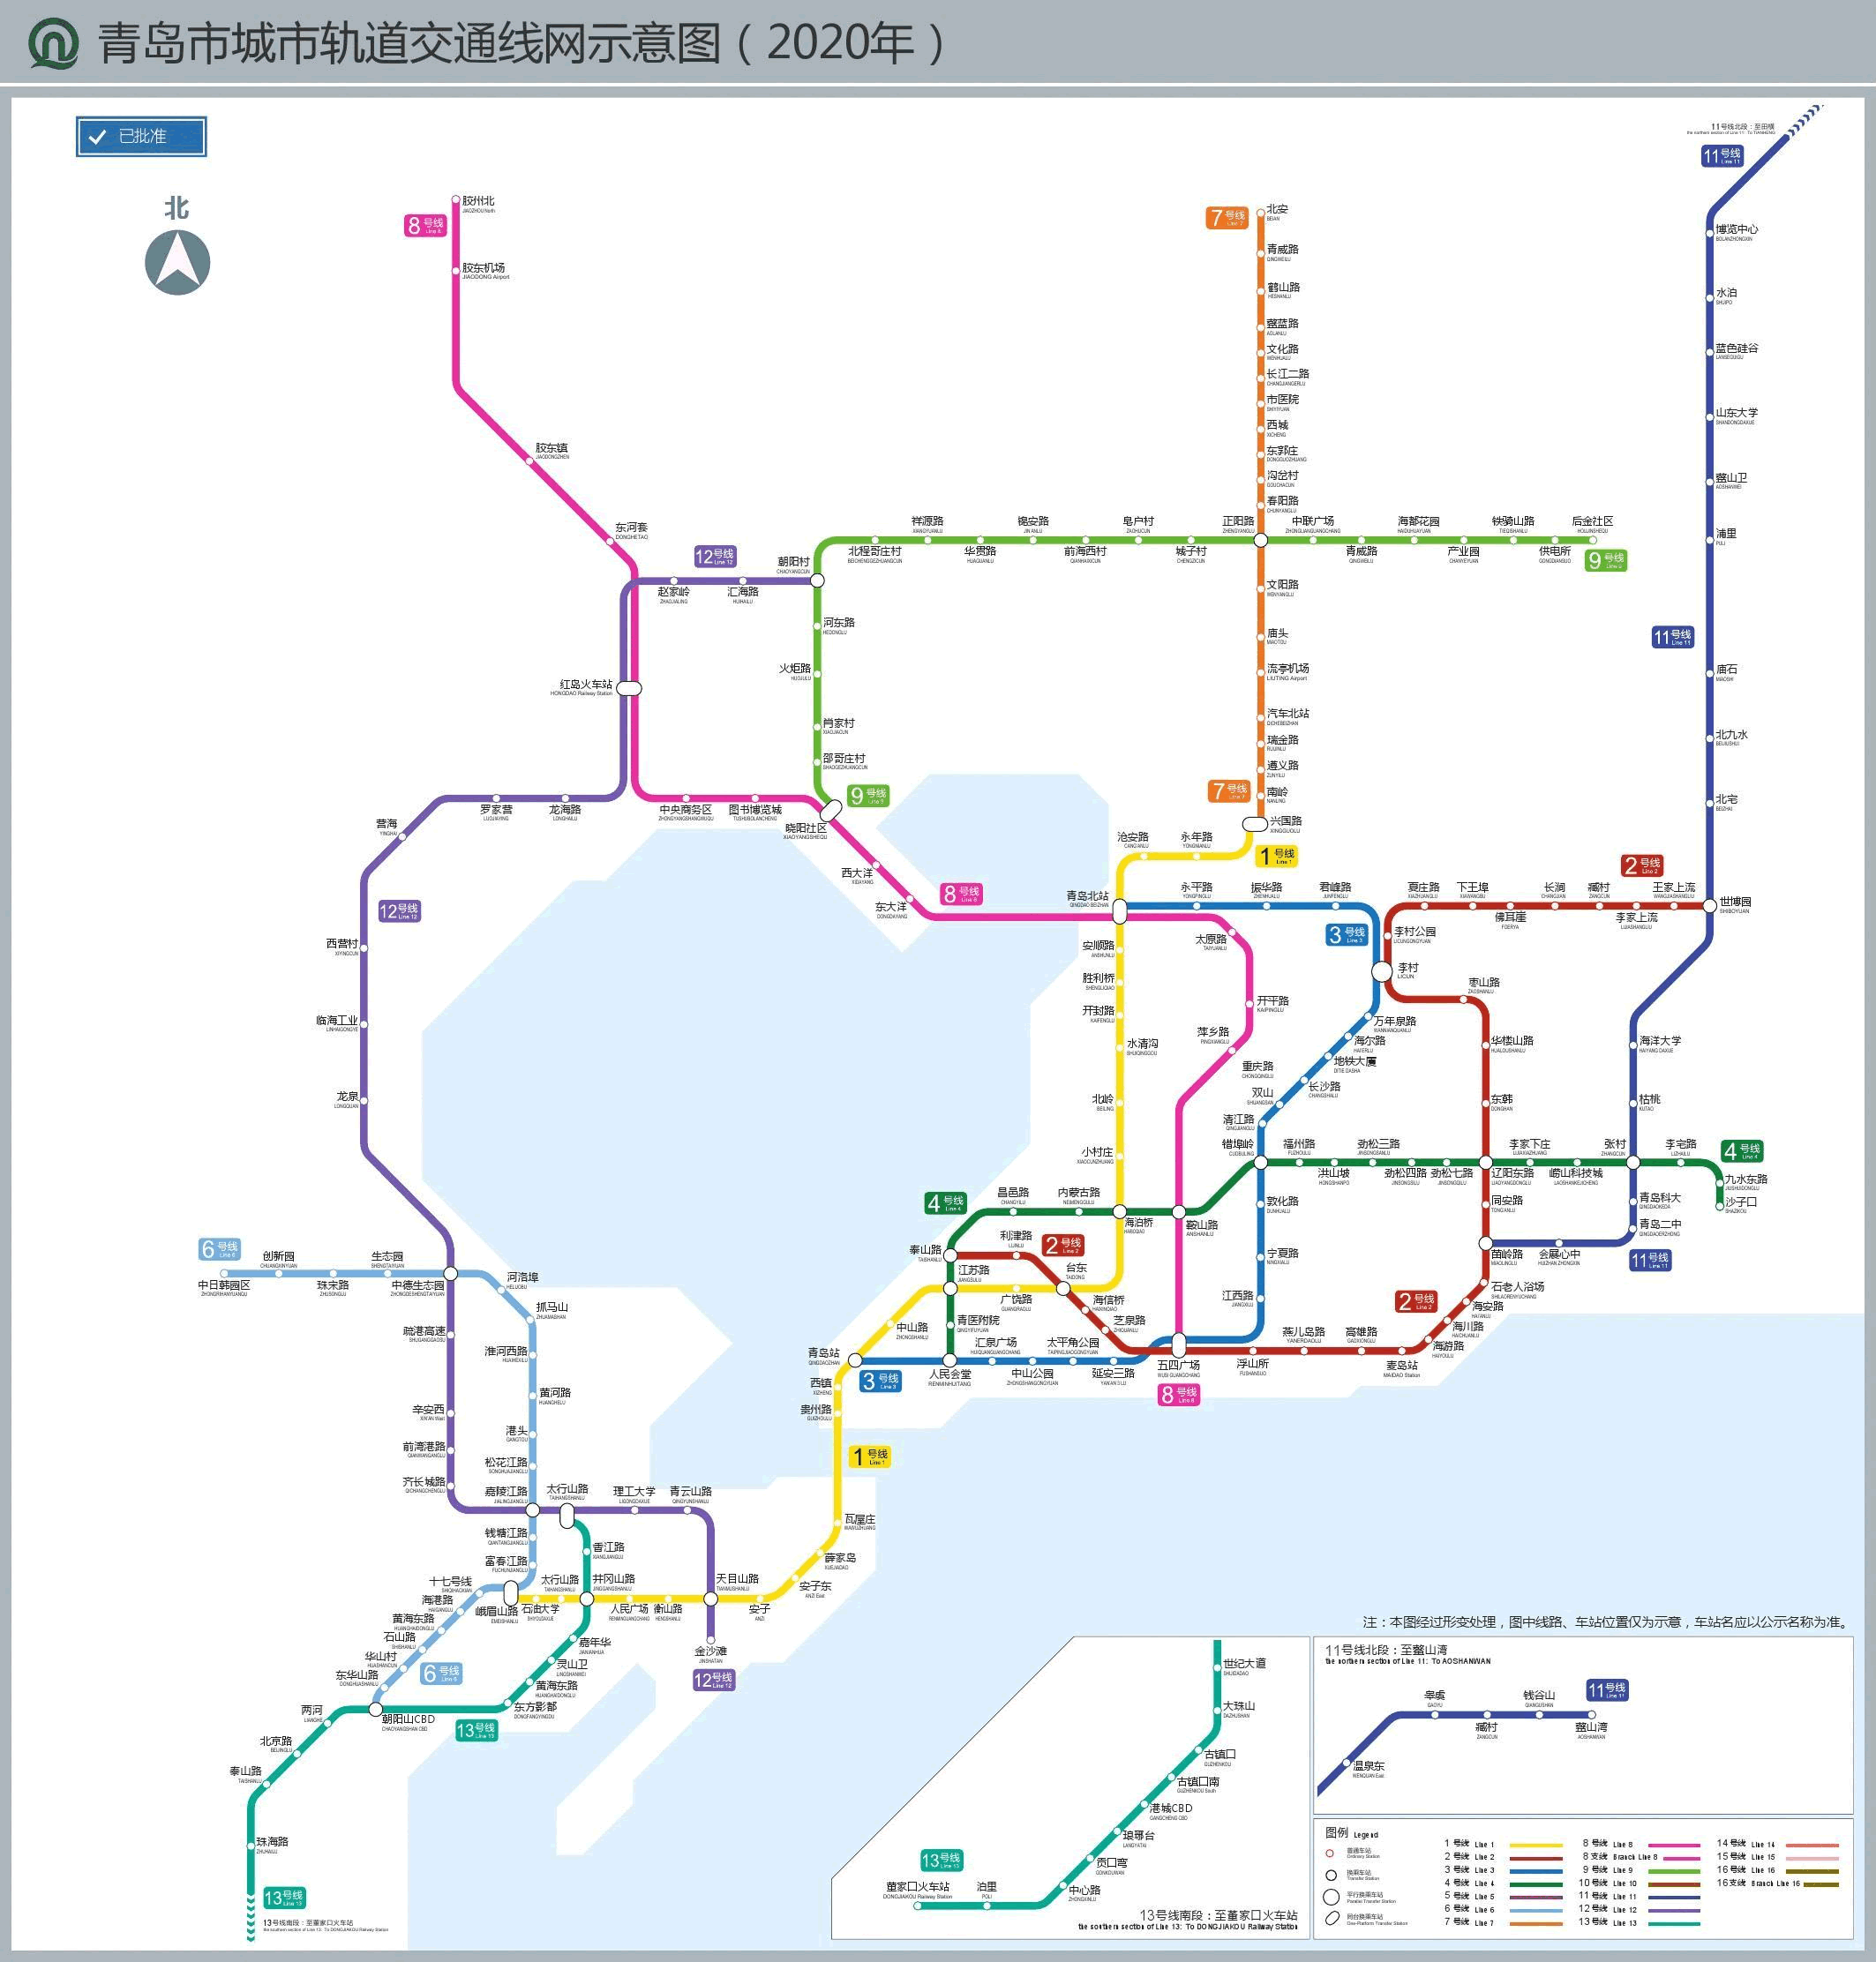 十四五青岛地铁在建线路或超过10条:5号线,2号线,7号线新进展